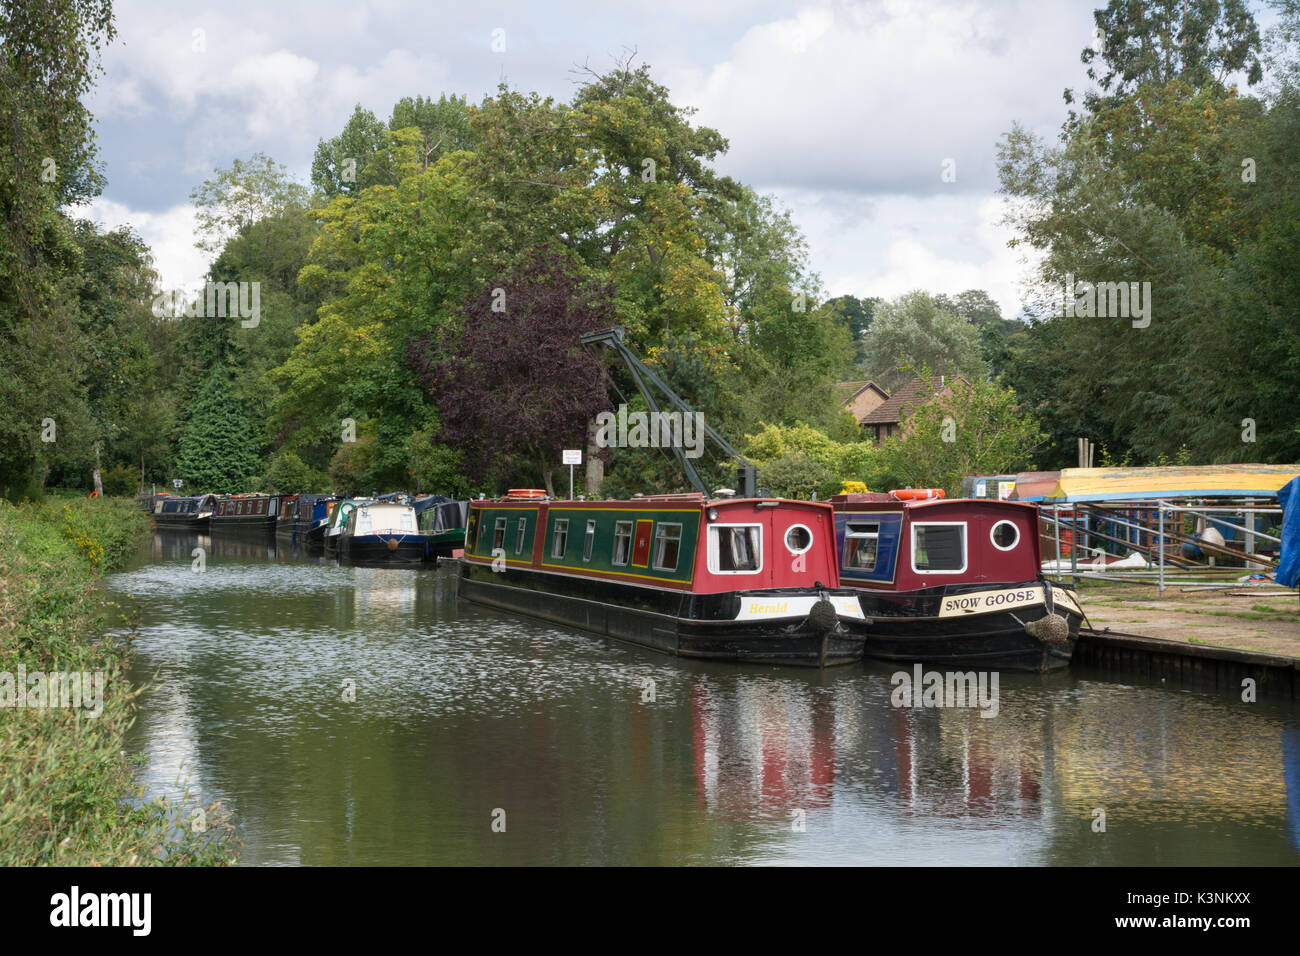 Narrowboats moored near Farncombe Boat House at Godalmin in Surrey, UK Stock Photo